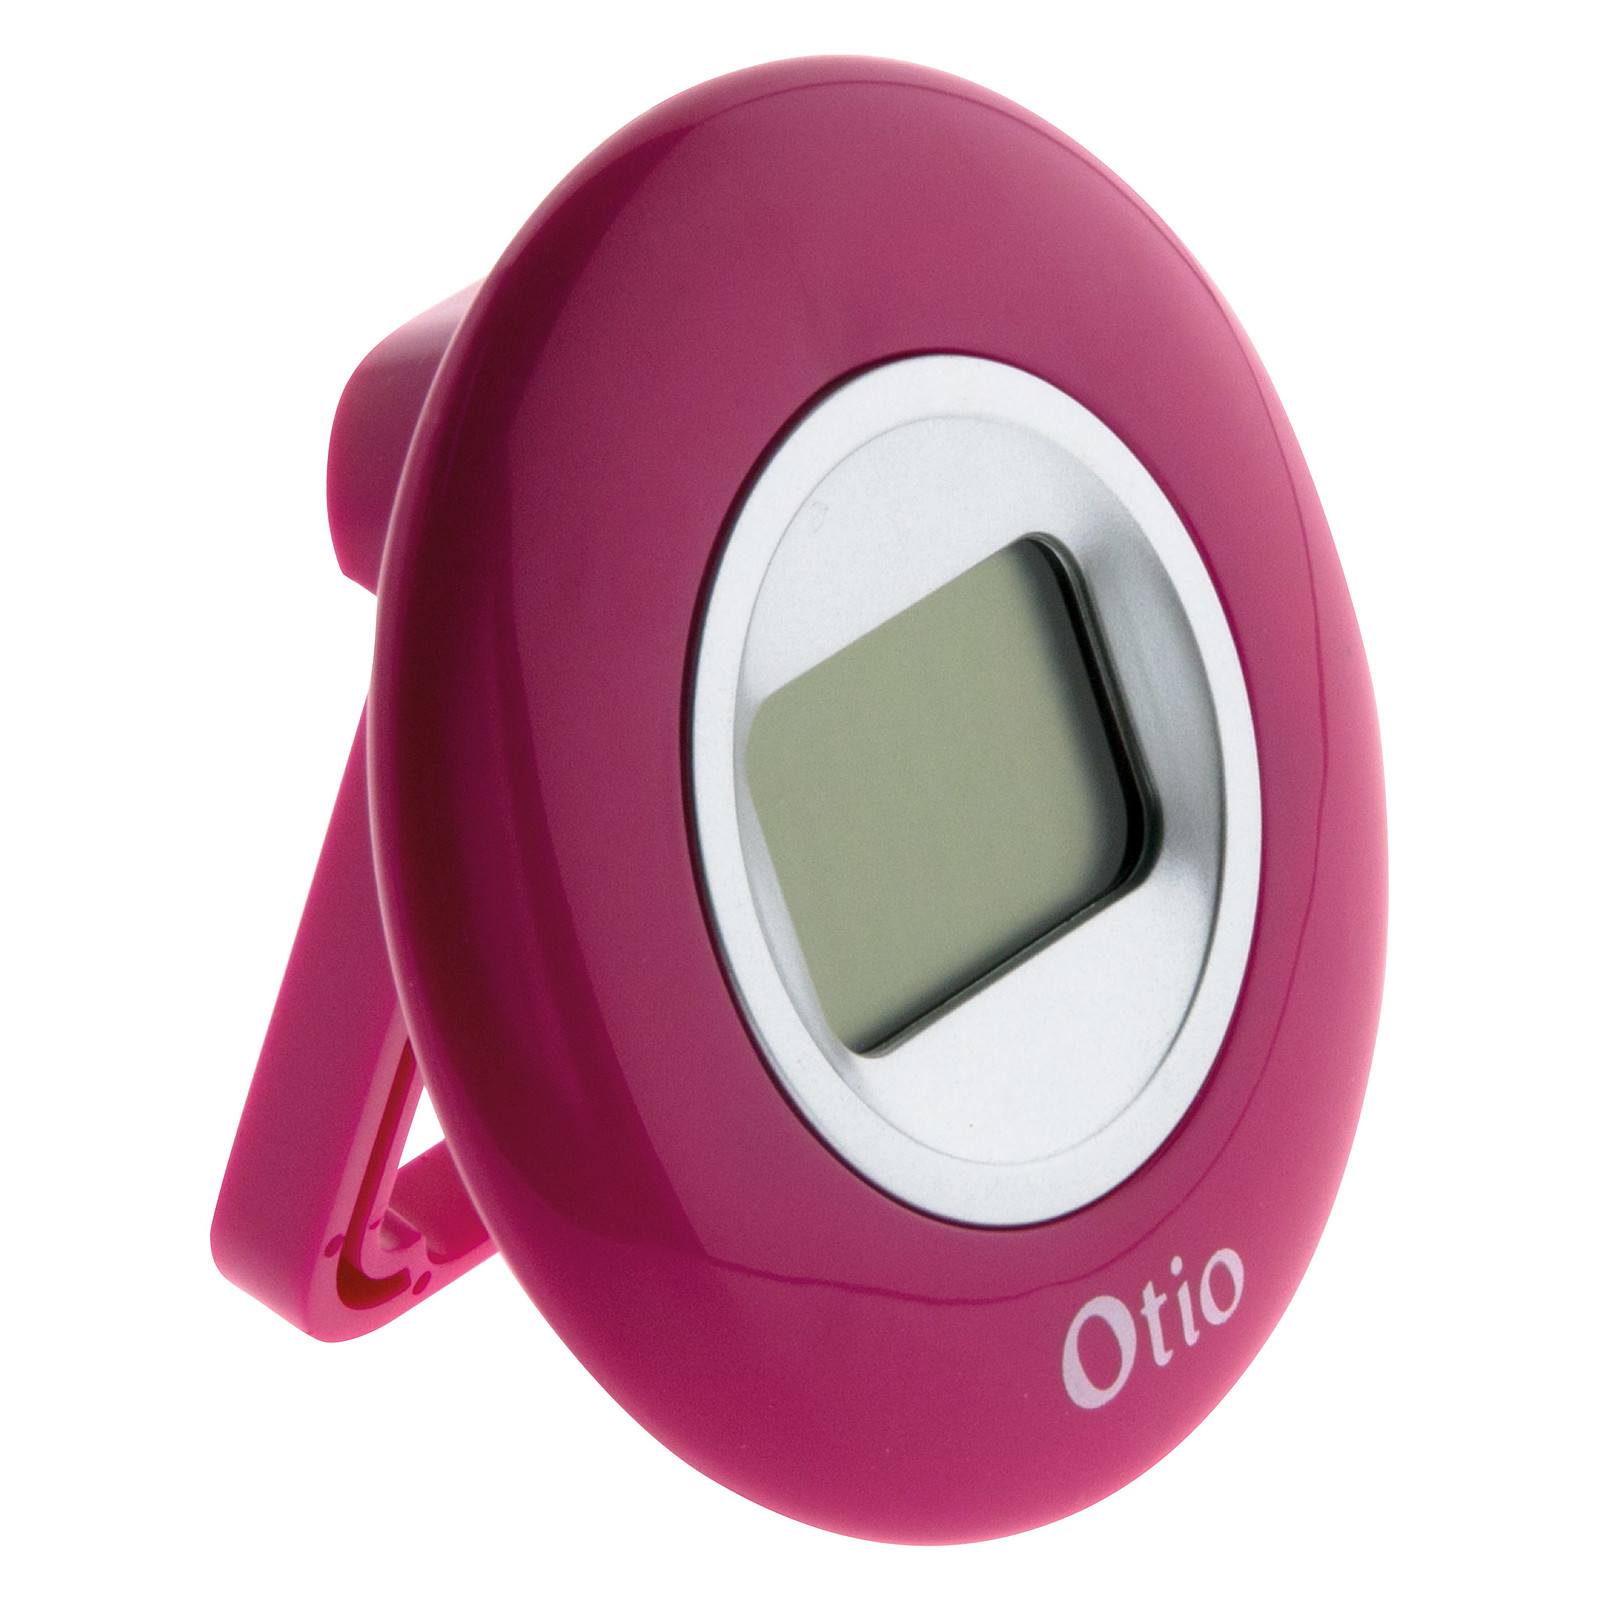 Otio-Thermomètre d'interieur rose - Otio - Station Meteo Otio